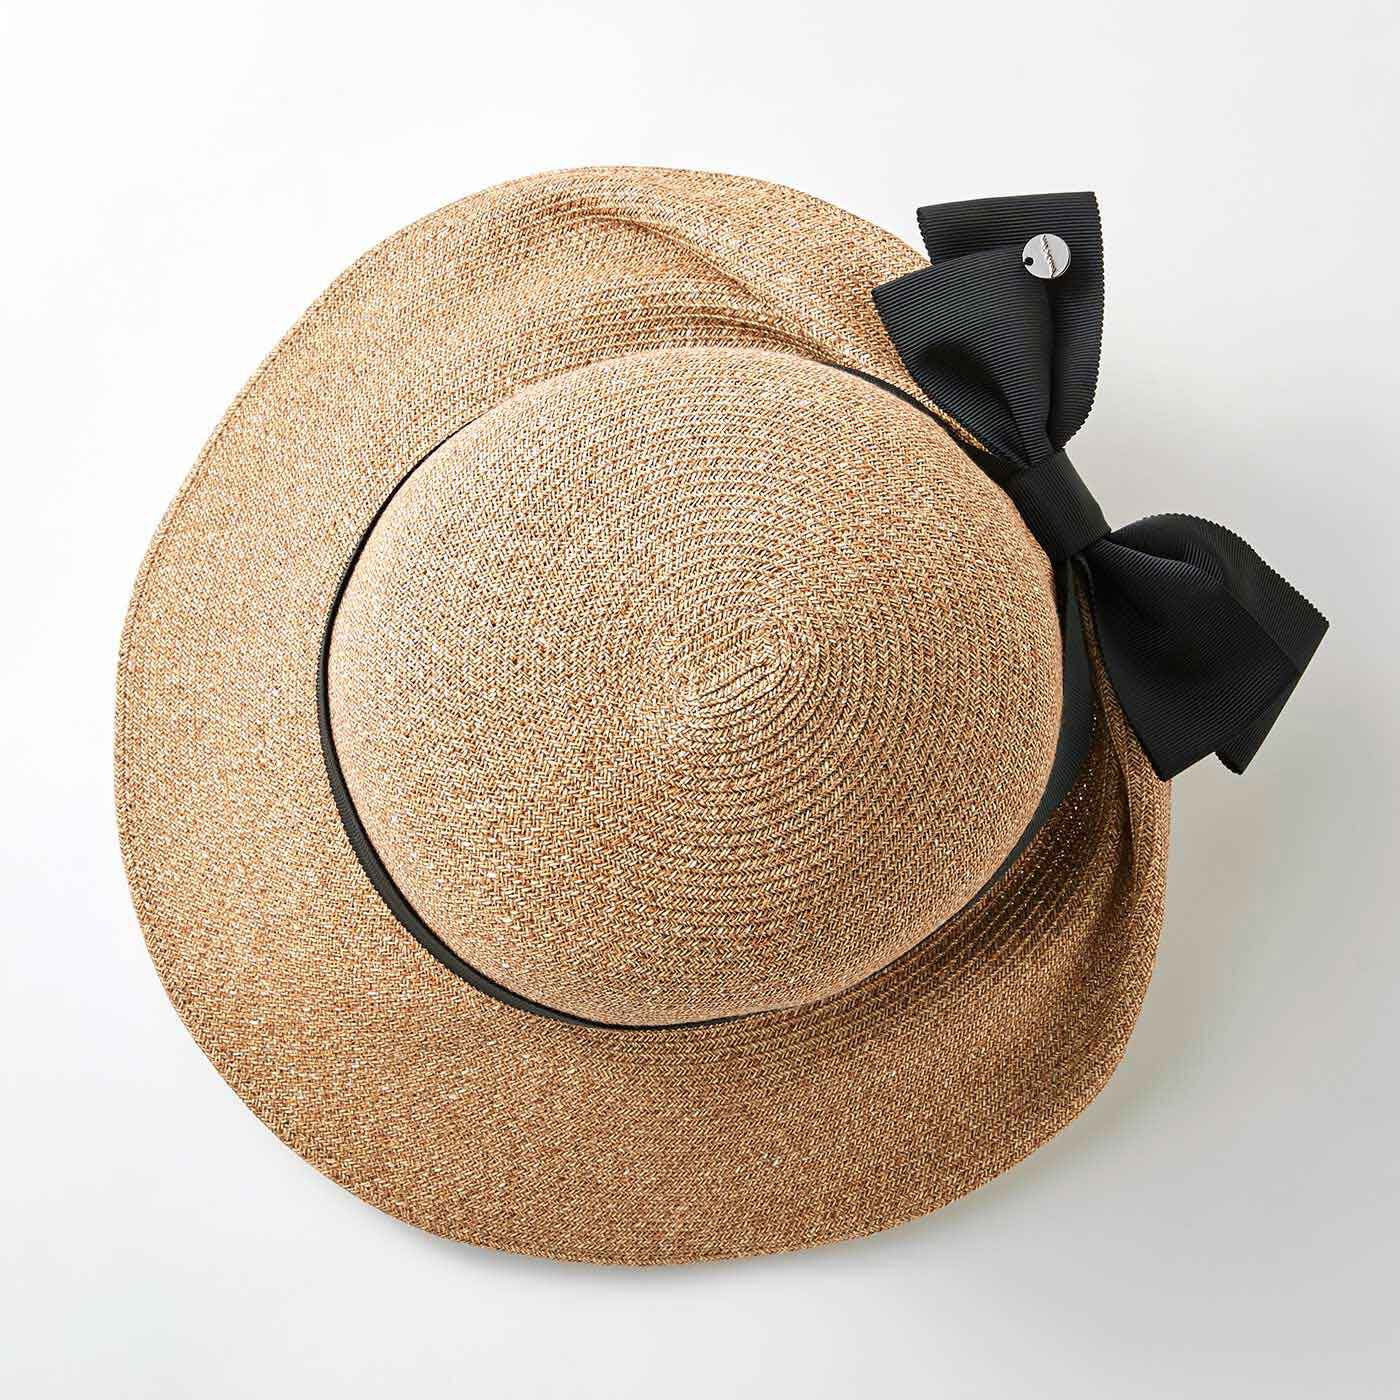 FelissimoLX|LX　since1940老舗マキシン　キャペリンハット〈ベージュ〉（キャリング保管ケース付き）|マキシンの帽子は、上から見てもとてもきれい。